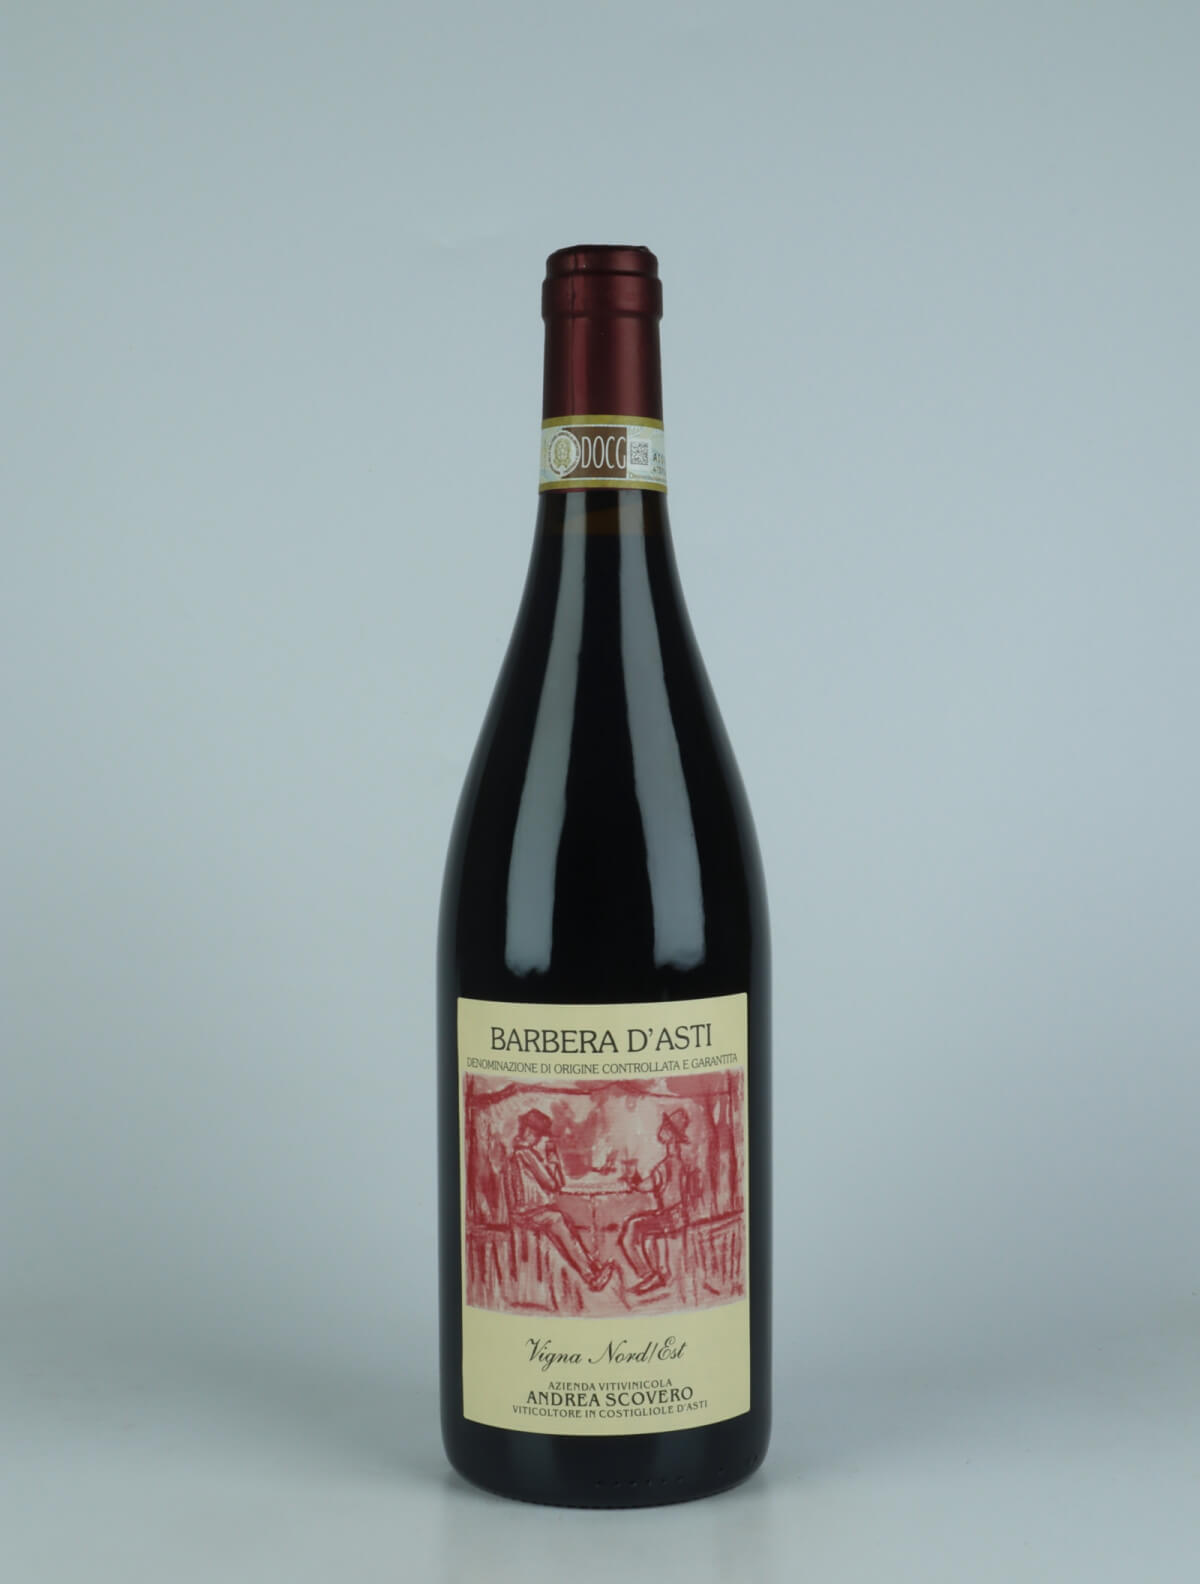 En flaske 2021 Barbera d'Asti - Vigna Nord-Est Rødvin fra Andrea Scovero, Piemonte i Italien